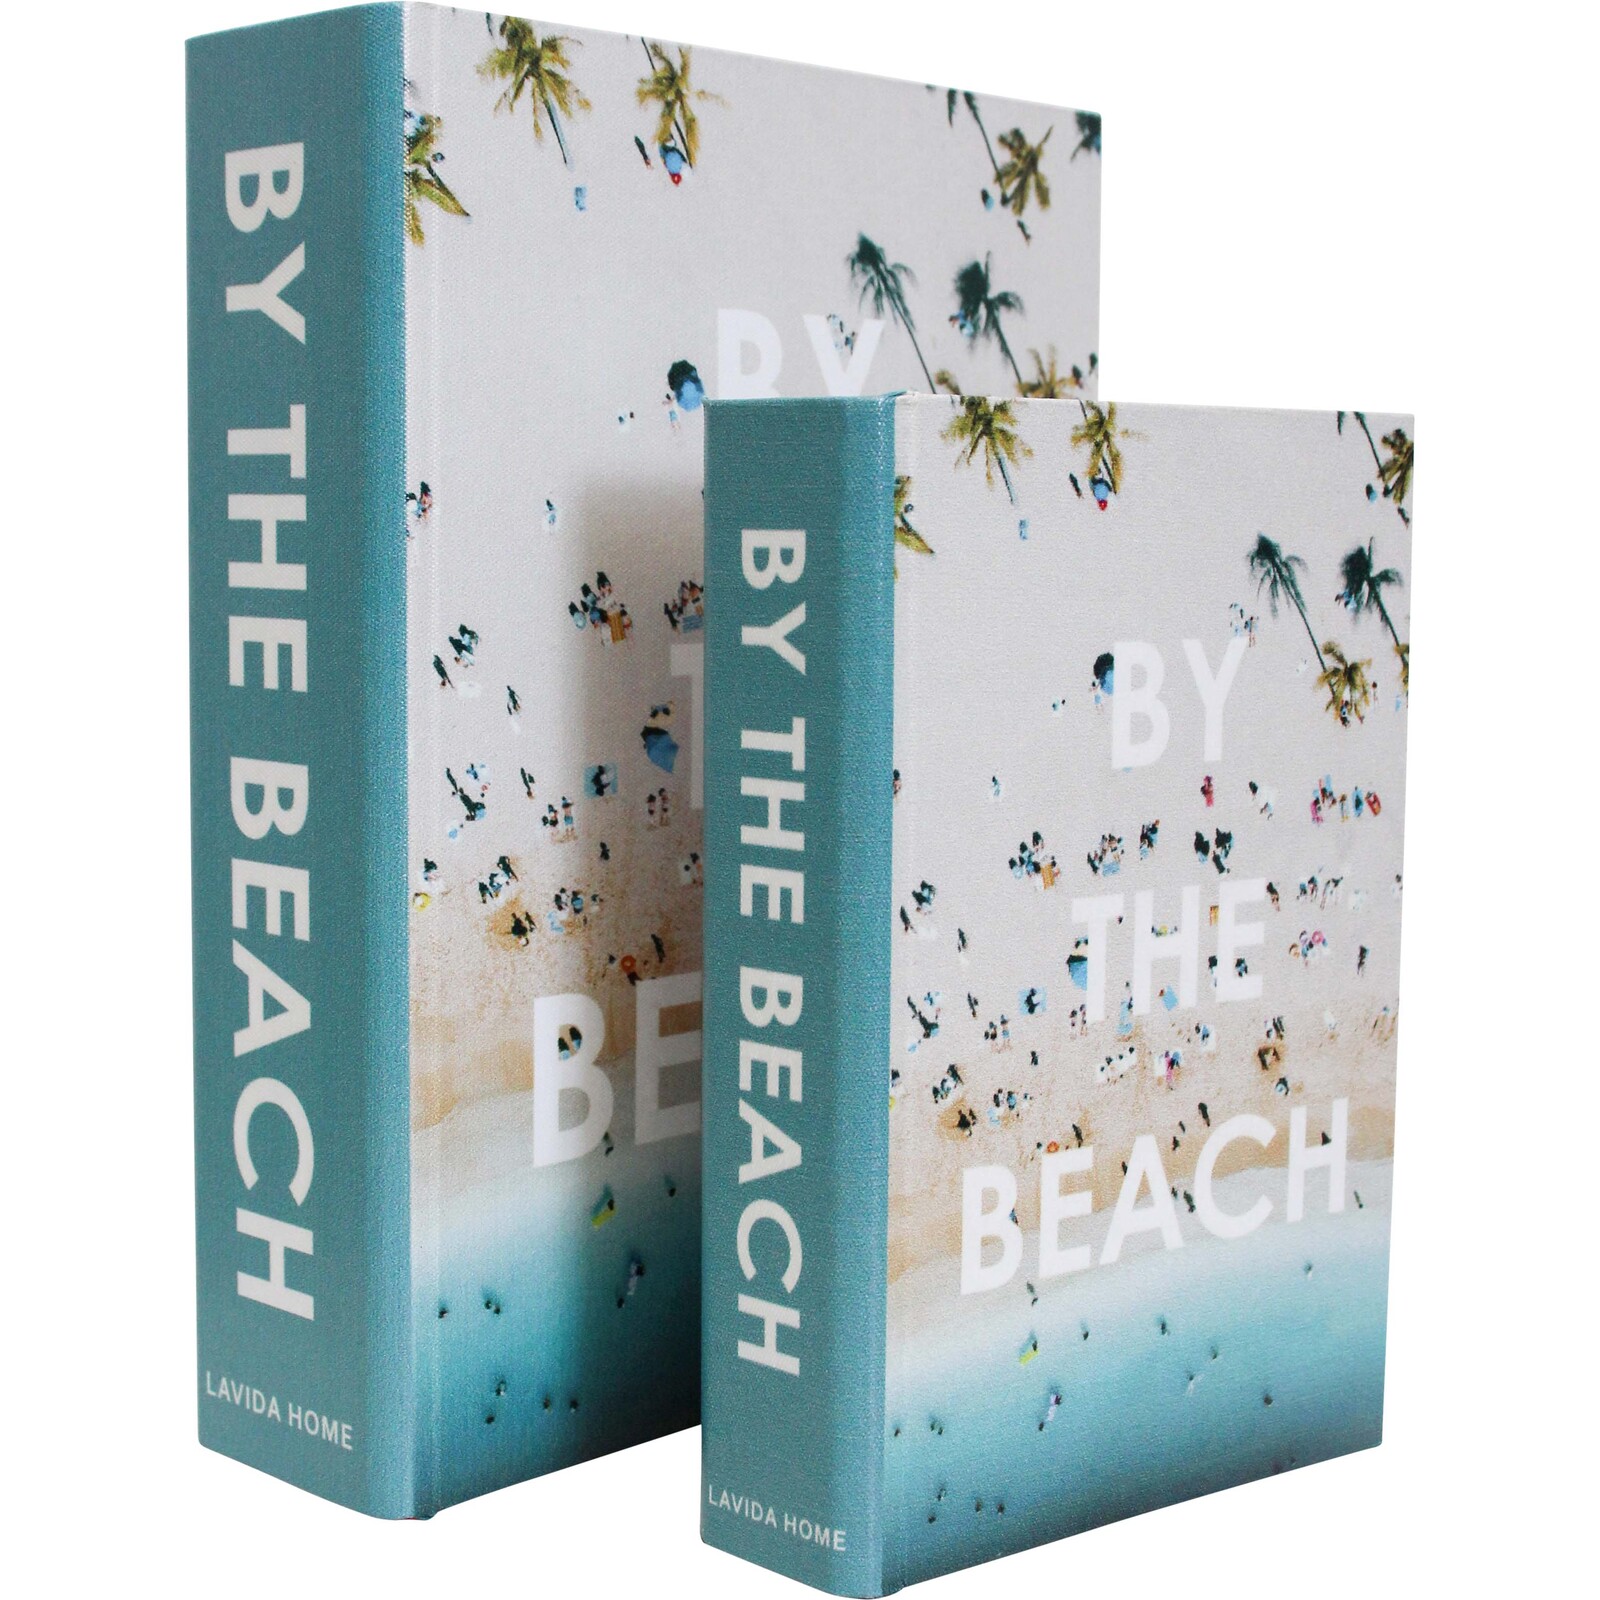 Book Box S/2 By The Beach